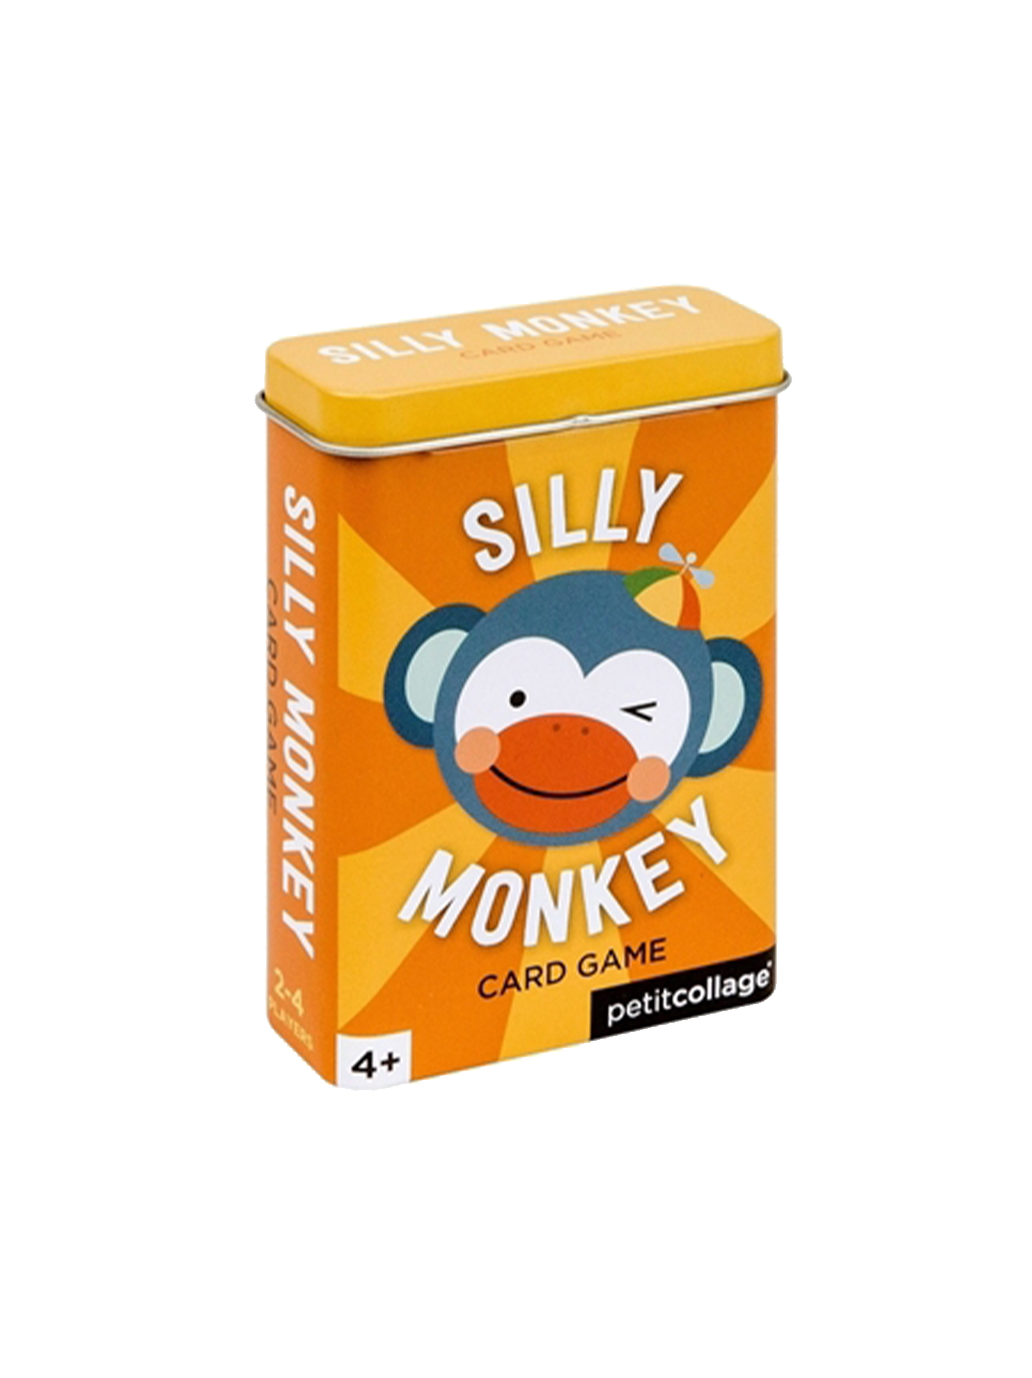 Le jeu de cartes Silly Monkey